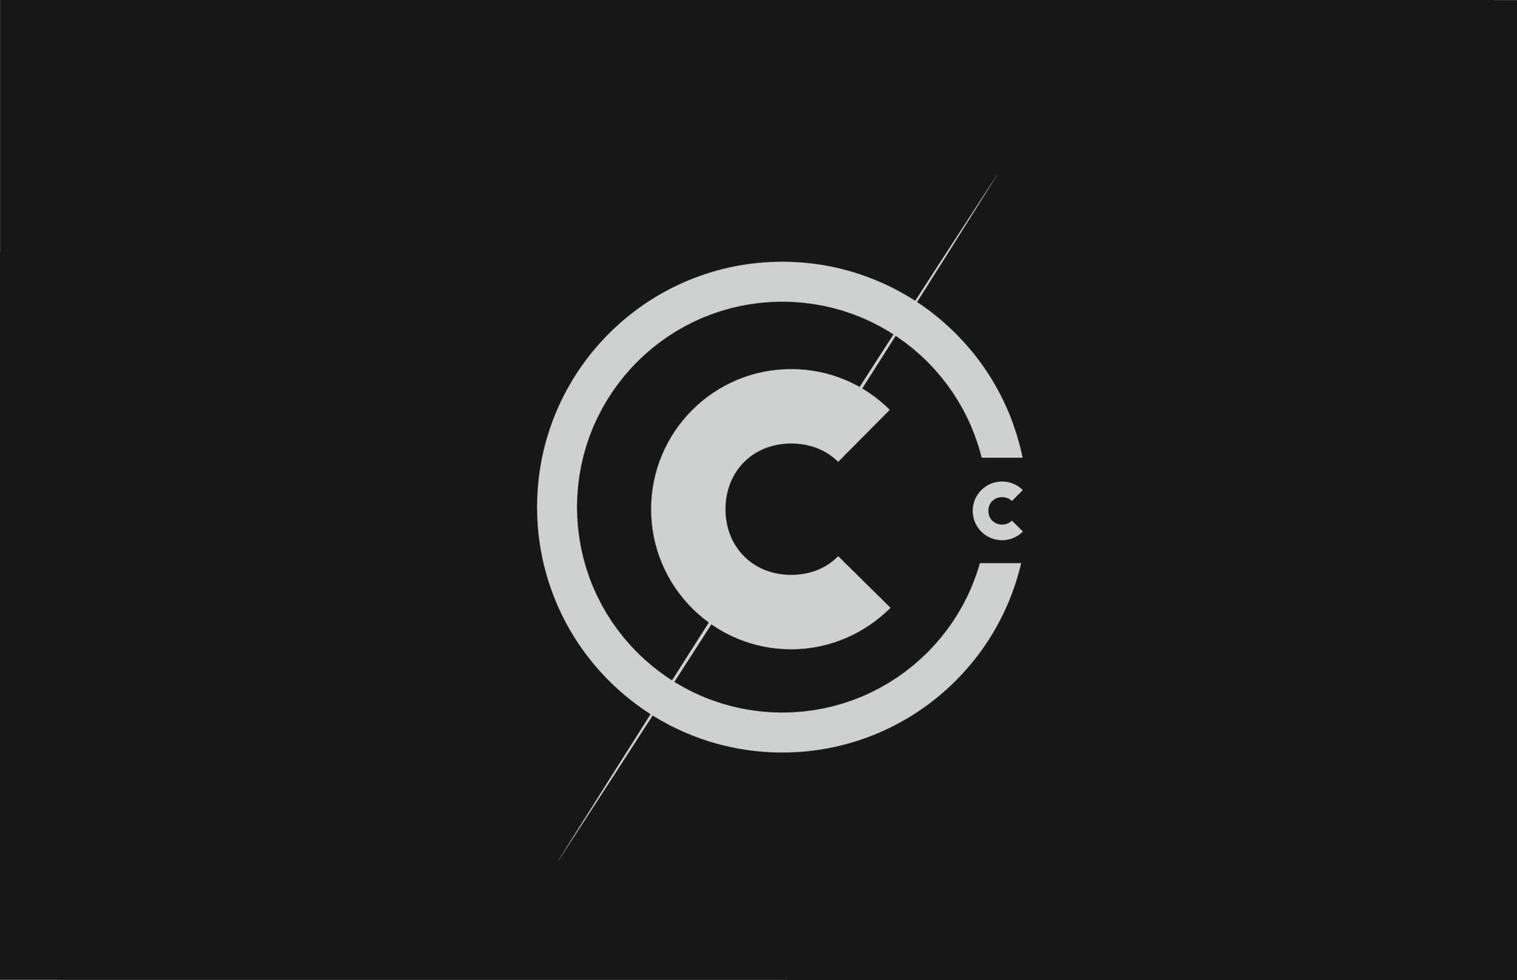 alfabet c letterpictogram logo. wit zwart eenvoudig lijn- en cirkelontwerp voor bedrijfsidentiteit vector